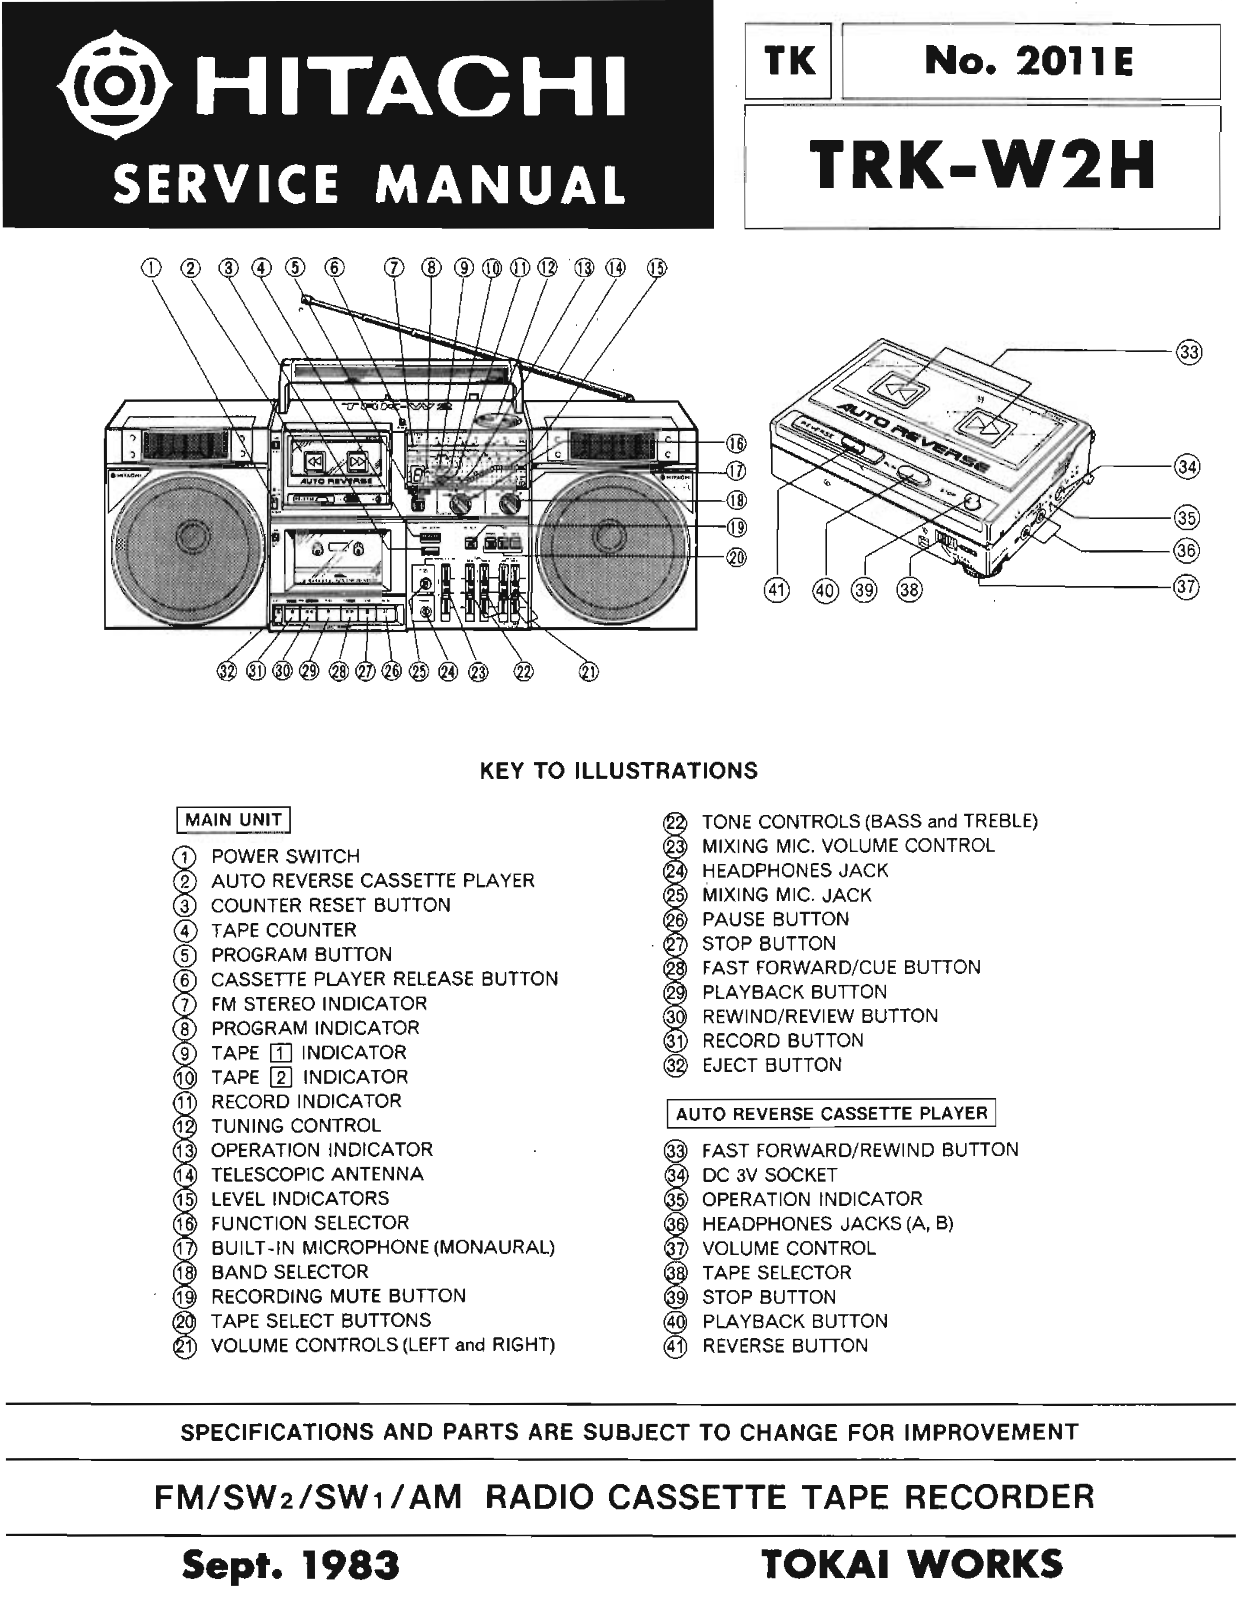 Hitachi TRK-W2-H Service Manual